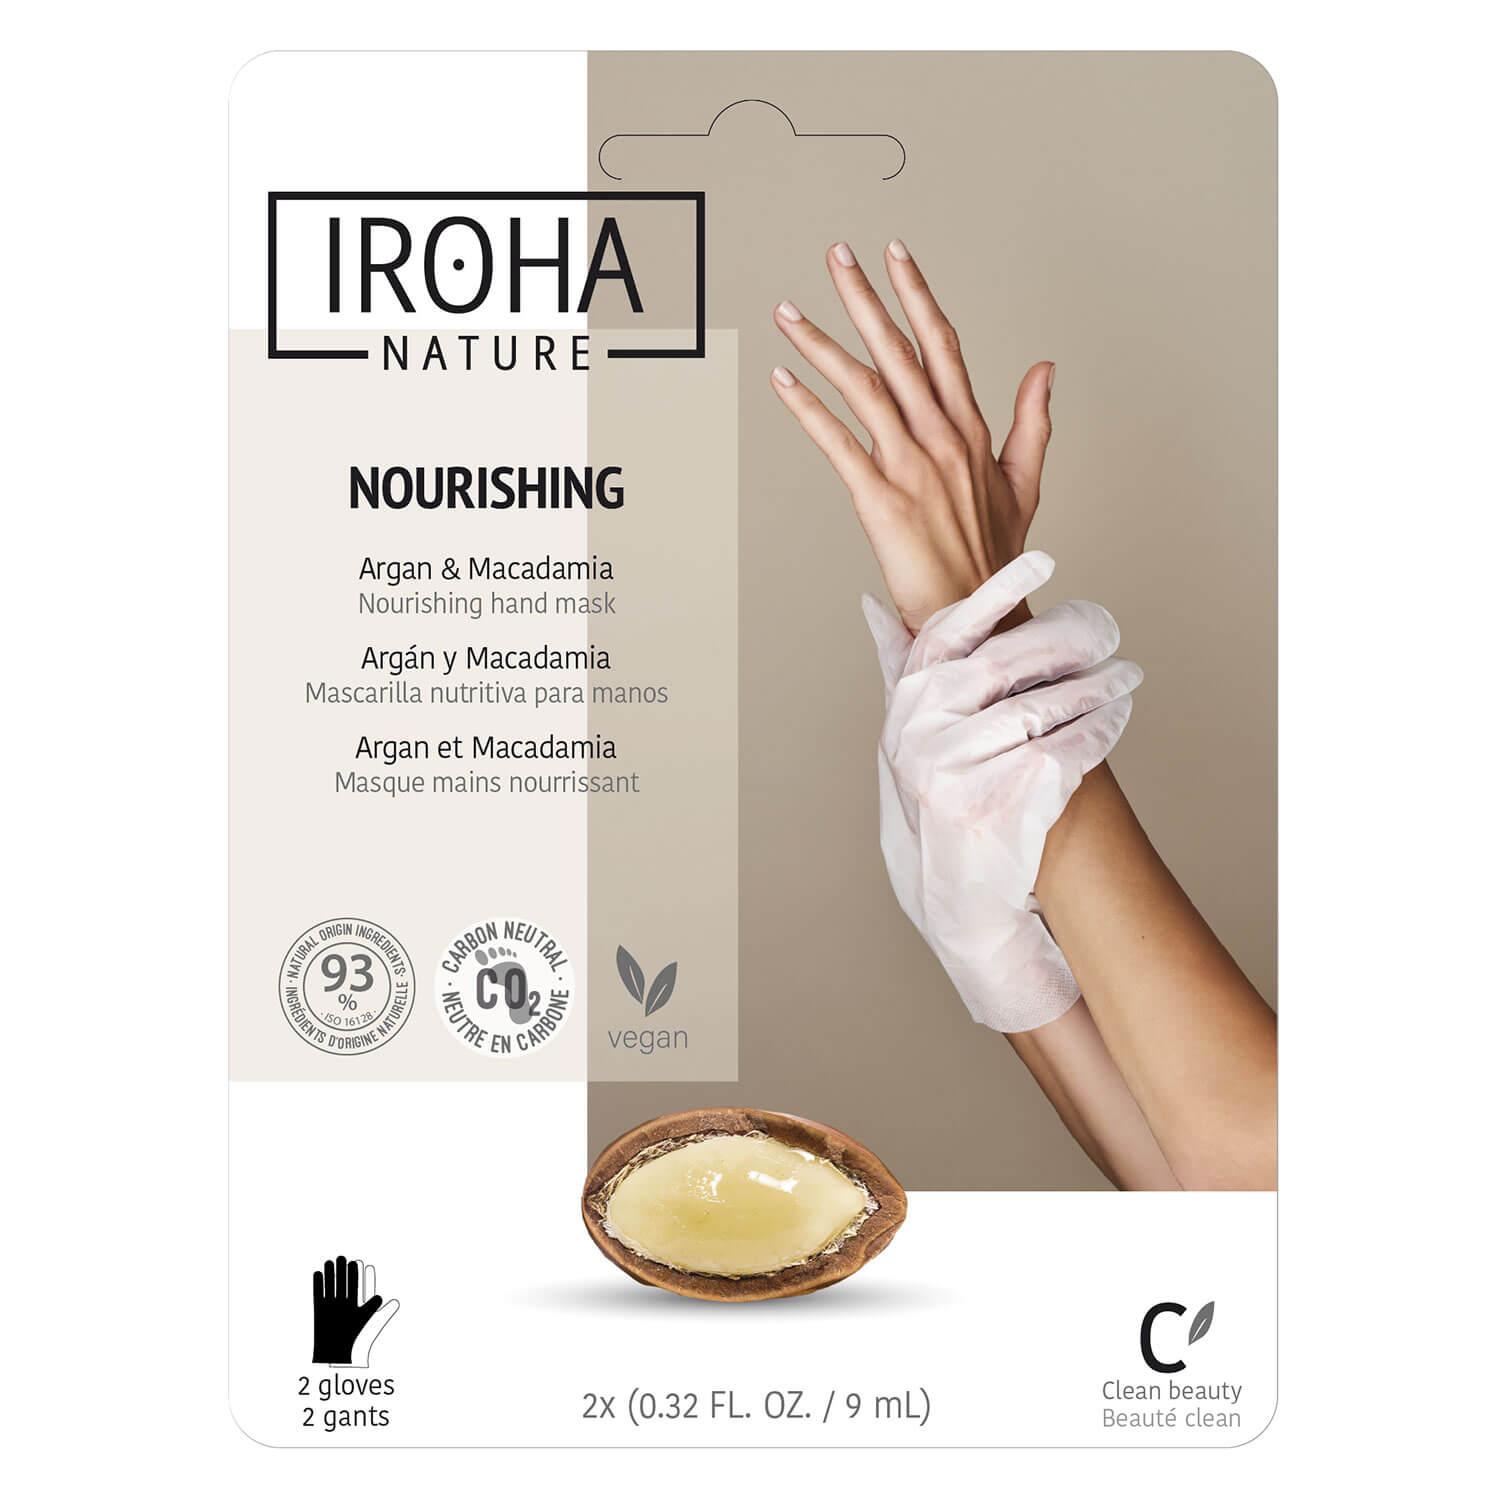 Iroha Nature - Nourishing Argan & Macadamia Hand Mask